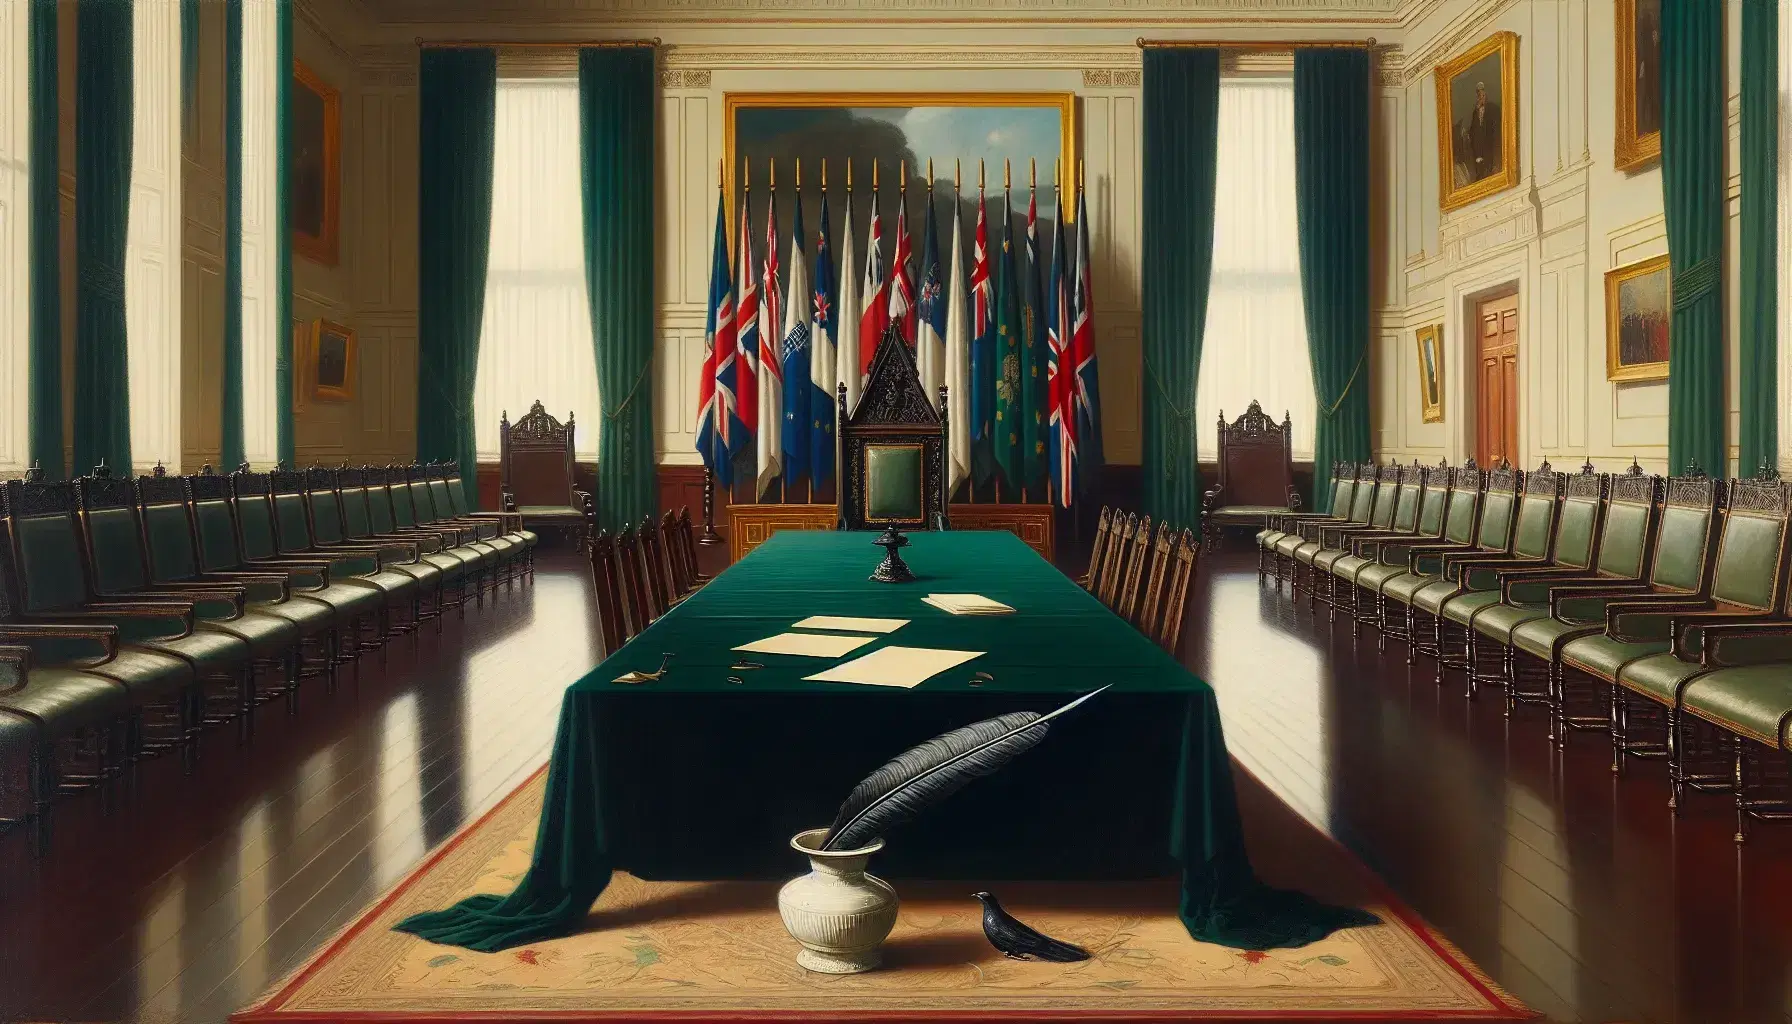 Sala solemne con mesa central cubierta por mantel verde, pluma negra, tintero de porcelana y papeles, rodeada de sillas con tapizado rojo y banderas monocromáticas en fondo iluminado.